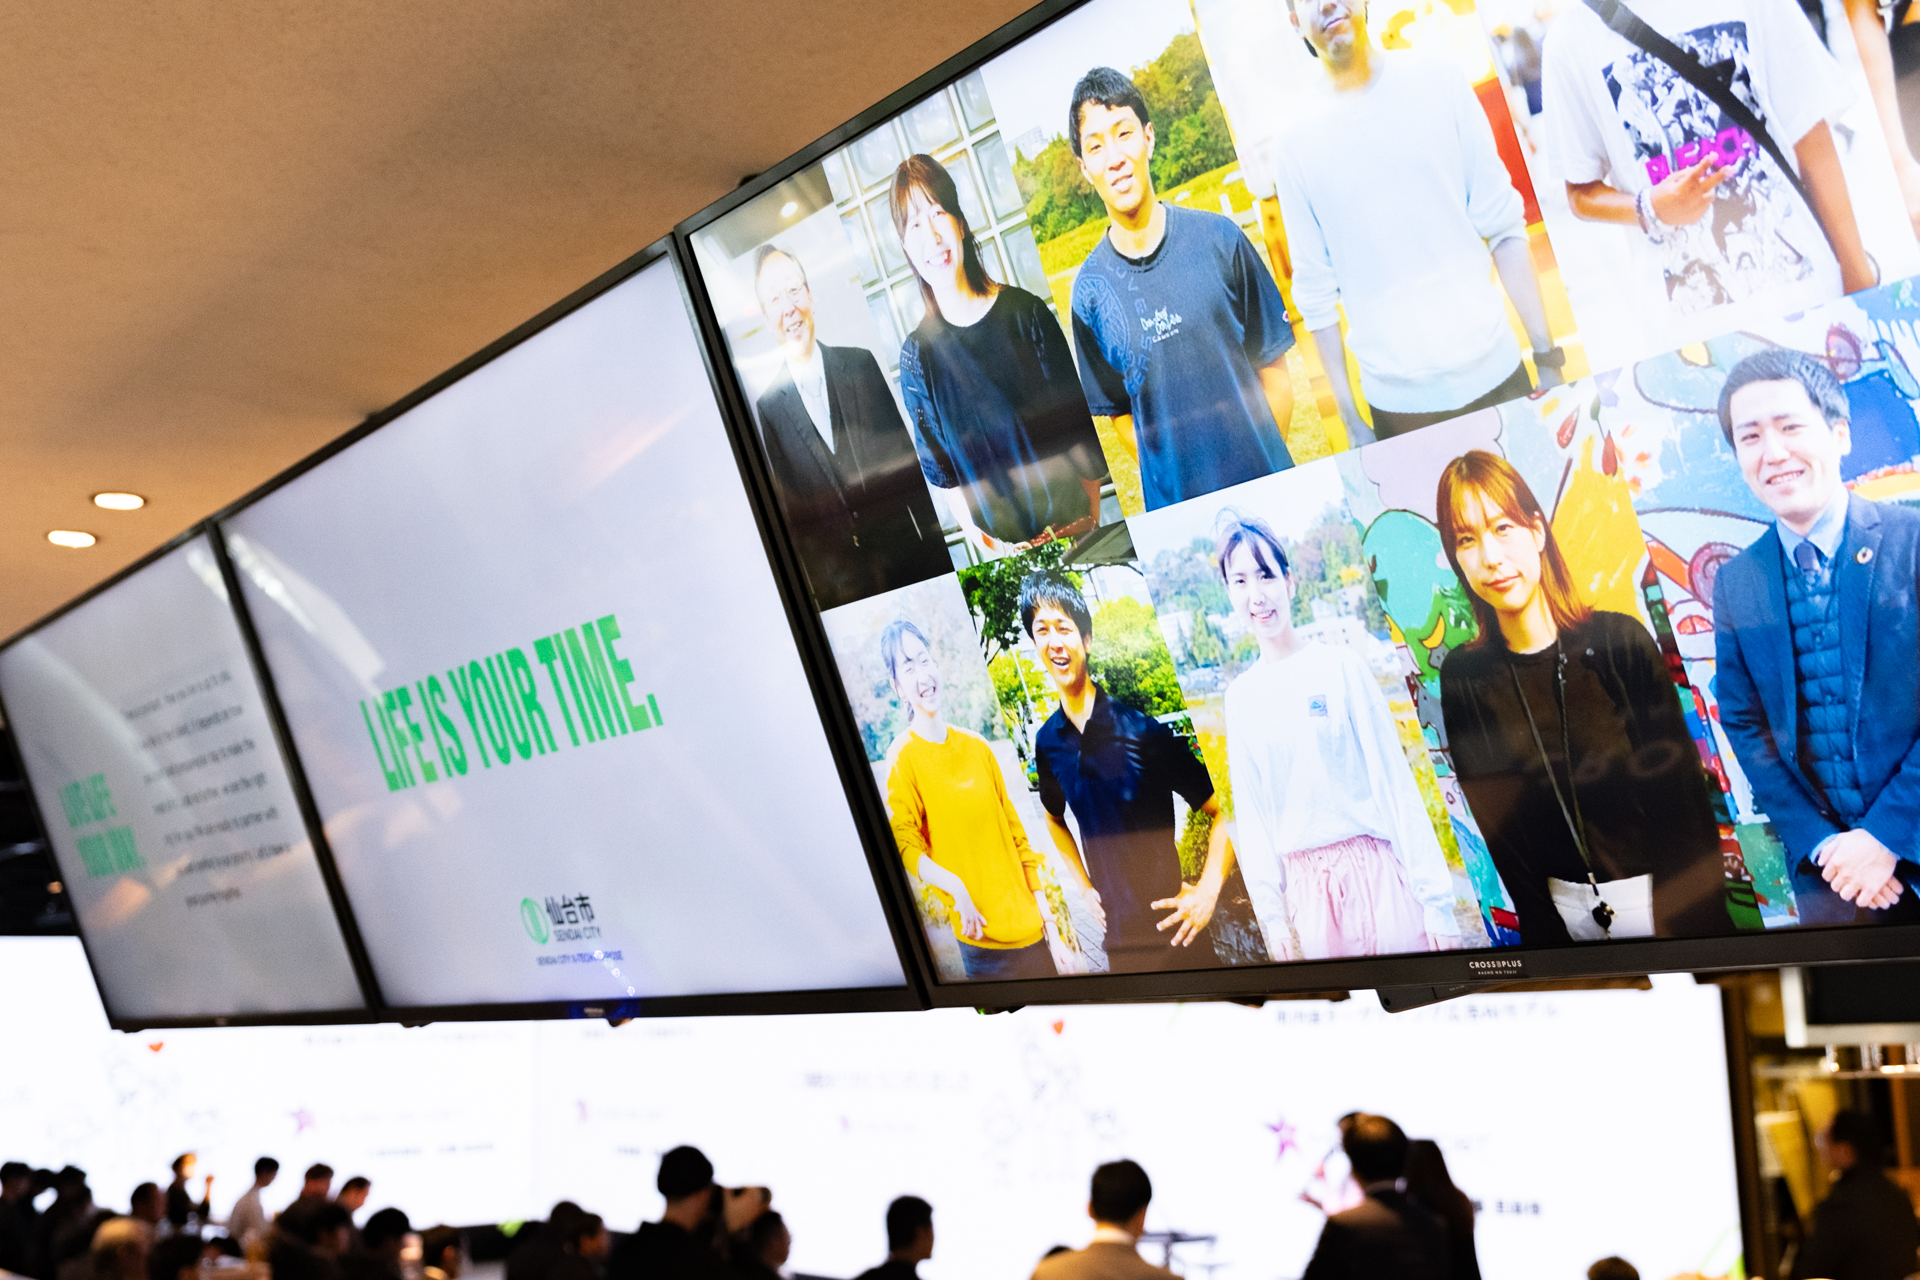 仙台X-TECHのイノベーションアワード会場内で写真展が開かれている様子